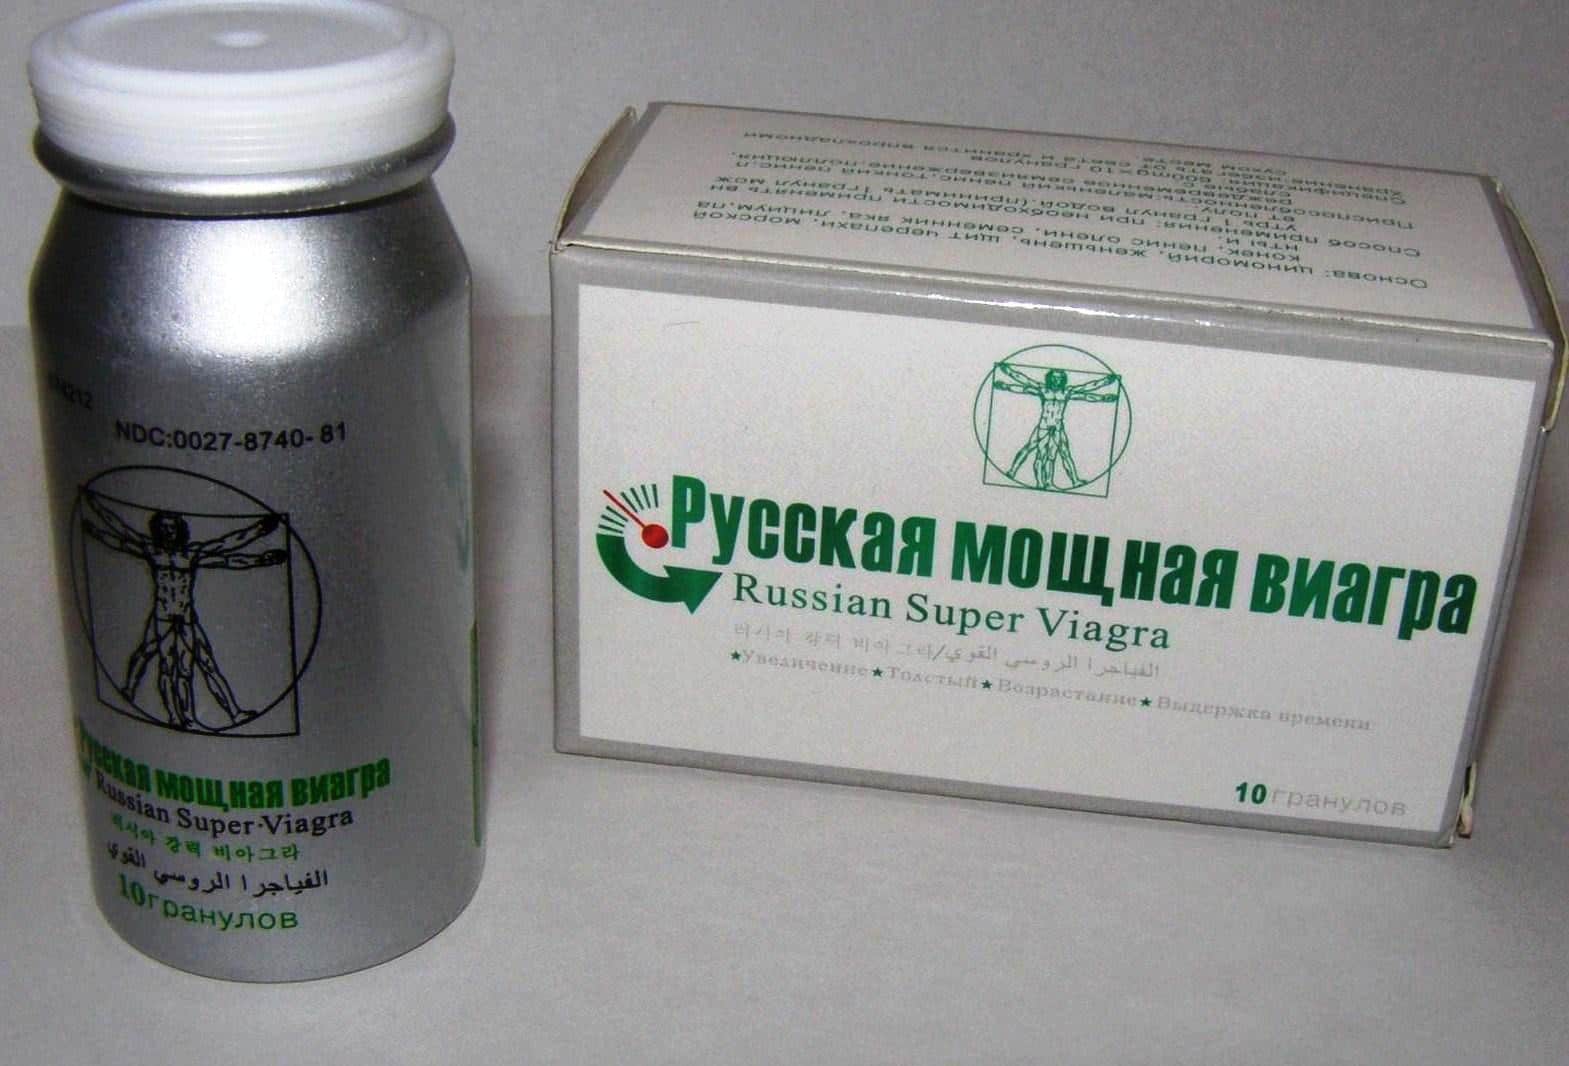 Купить дешево Русская мощная виагра Russian Super Viagra 10 гранул